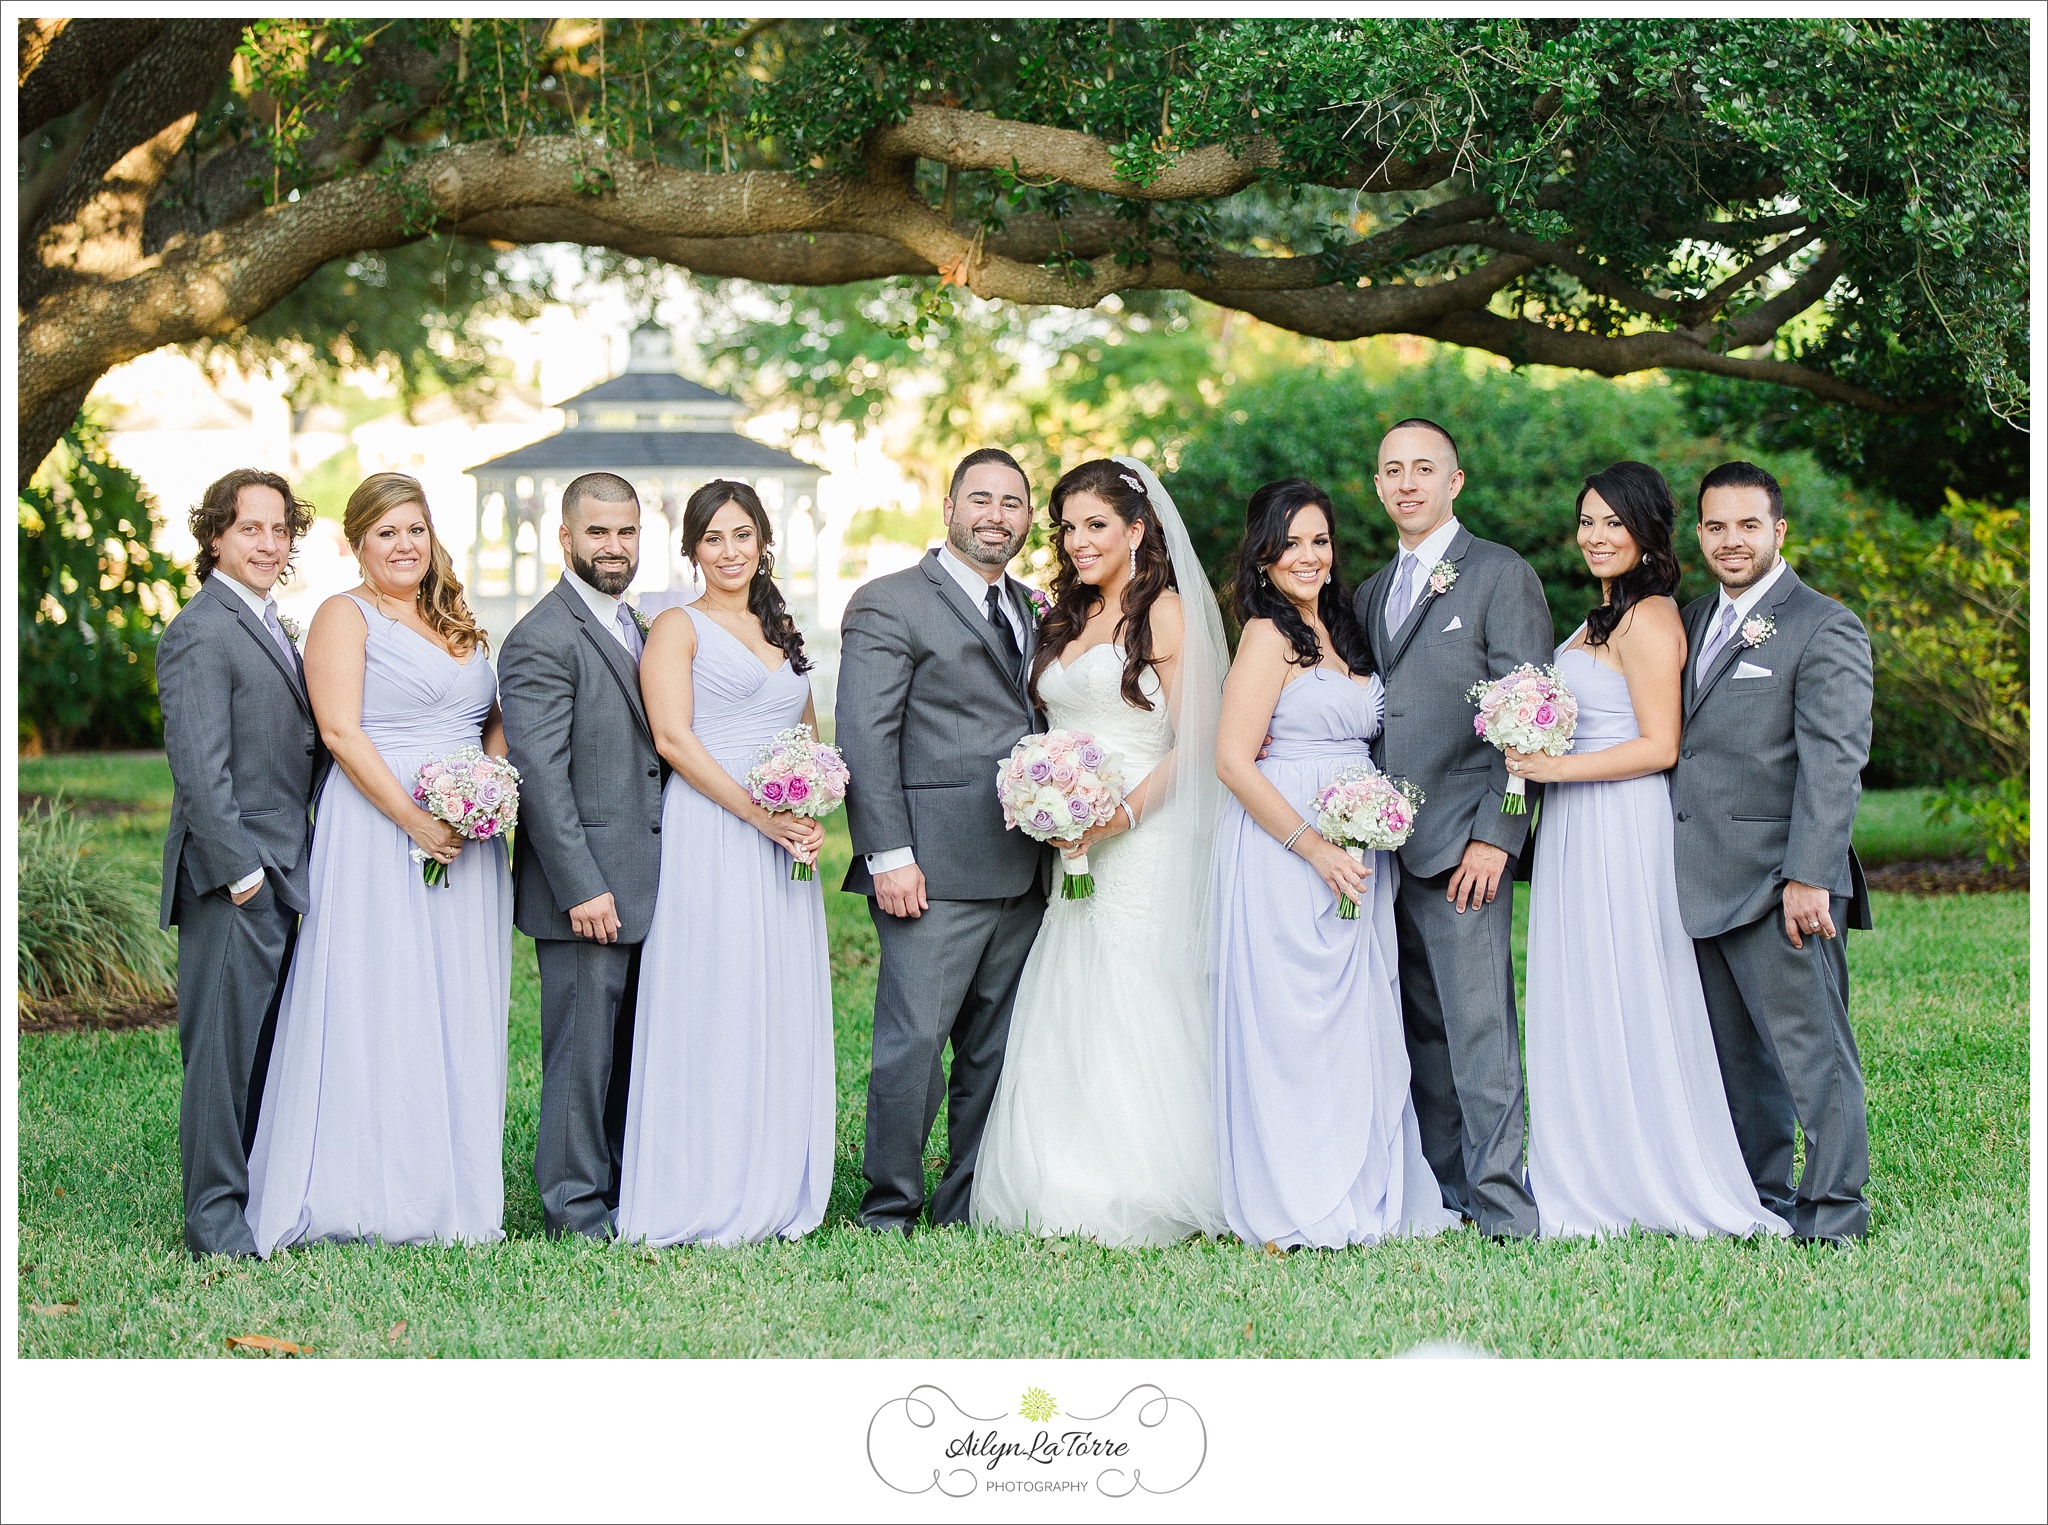 Davis Island Garden Club Wedding |© Ailyn La Torre Photography 2014